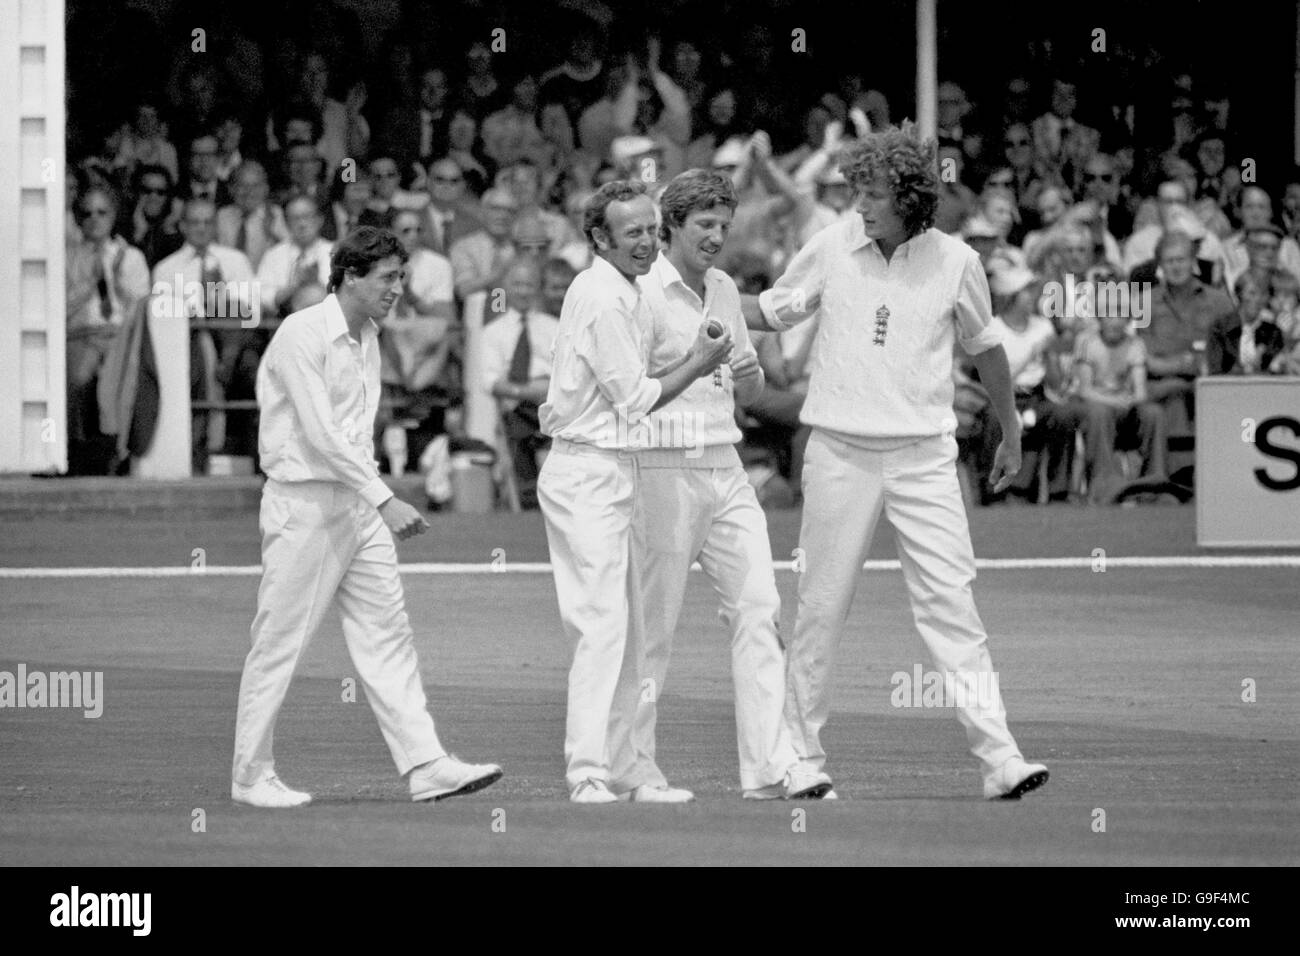 Derek Randall (l), Derek Underwood (2. L) und Bob Willis (r) gratulieren „New Boy“ Ian Botham (2. R) zum Fang, der den Australier Ian Davis abwies (nicht im Bild). Botham nahm drei Wickets für England auf seinem Test-Debüt. Stockfoto